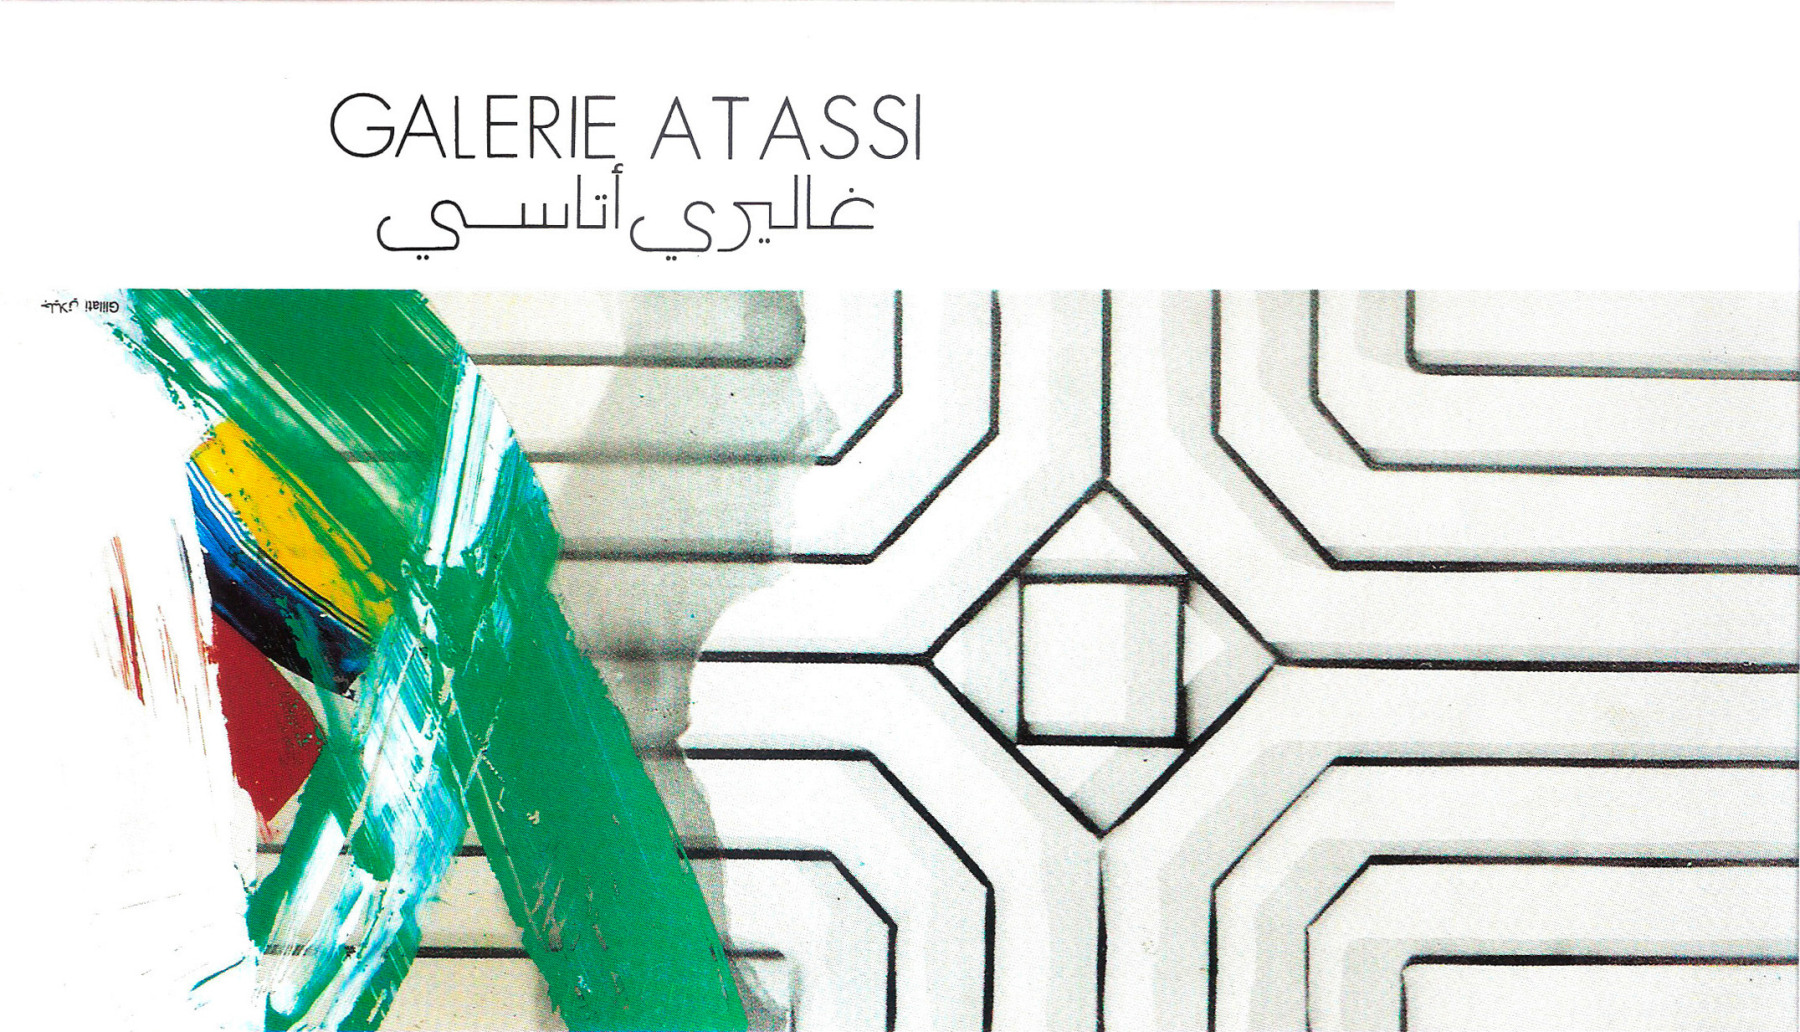 غاليري أتاسي - دمشق - مجموعات أرشيفية - Atassi Foundation